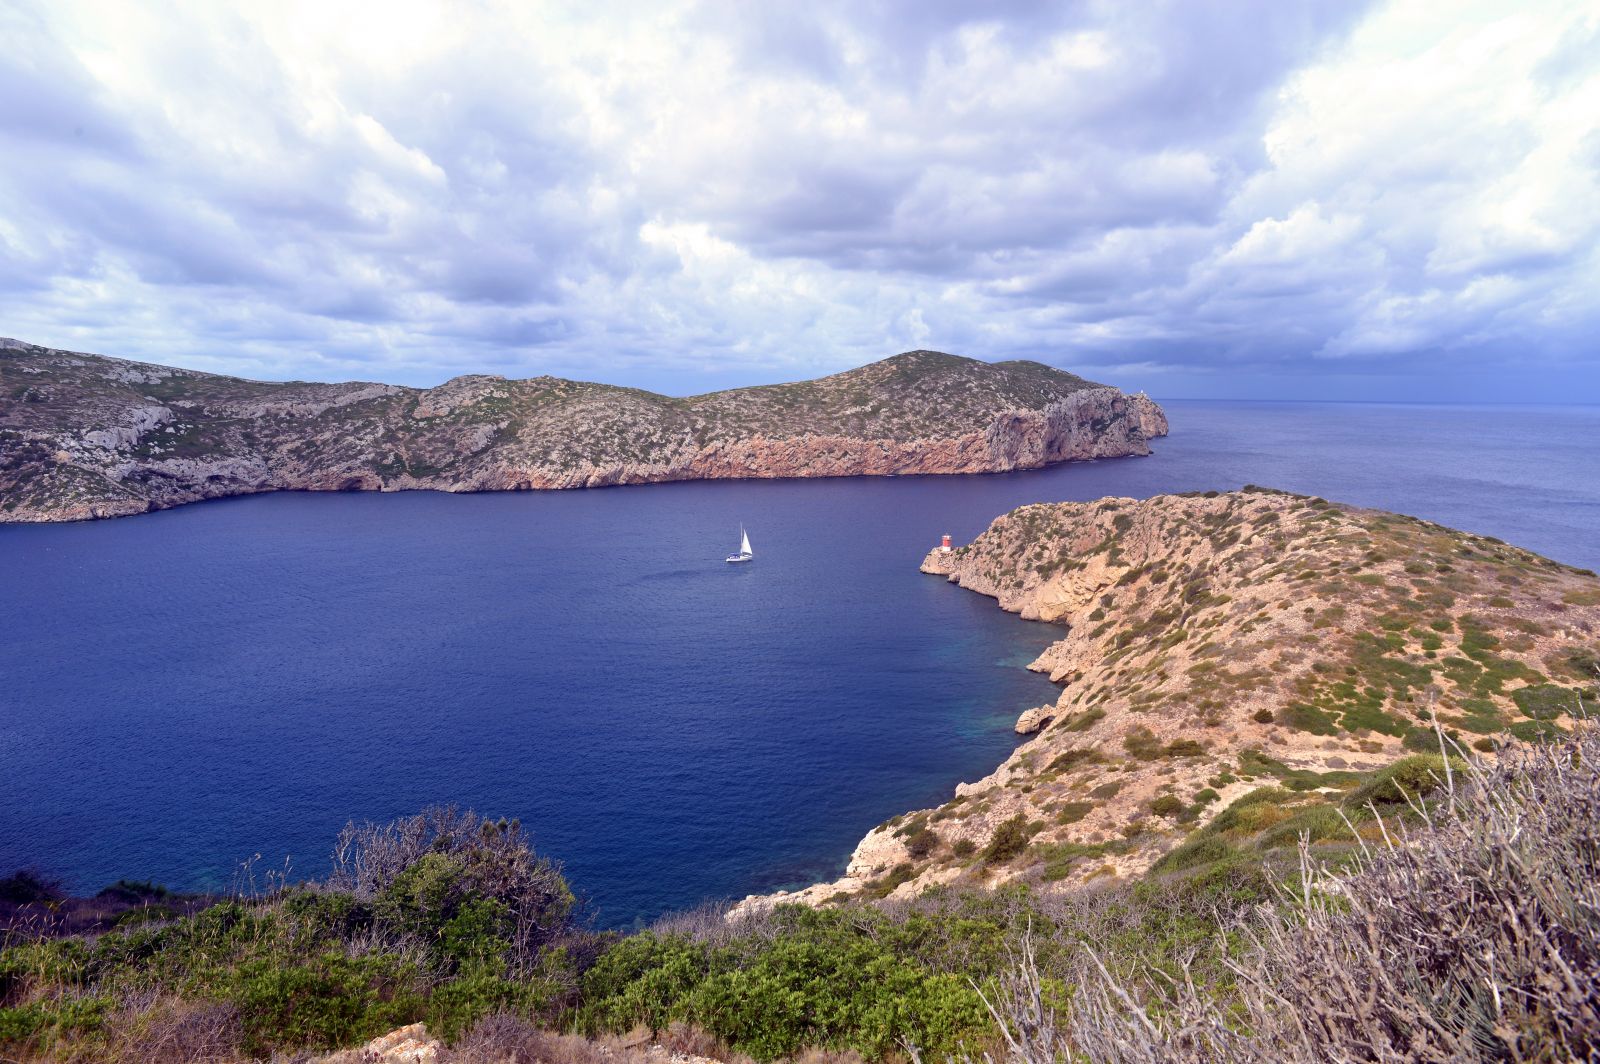 Auch die Cabrera-Inseln südöstlich von Mallorca sind ruhig und idyllisch. ©Mark Barrett/AdobeStock